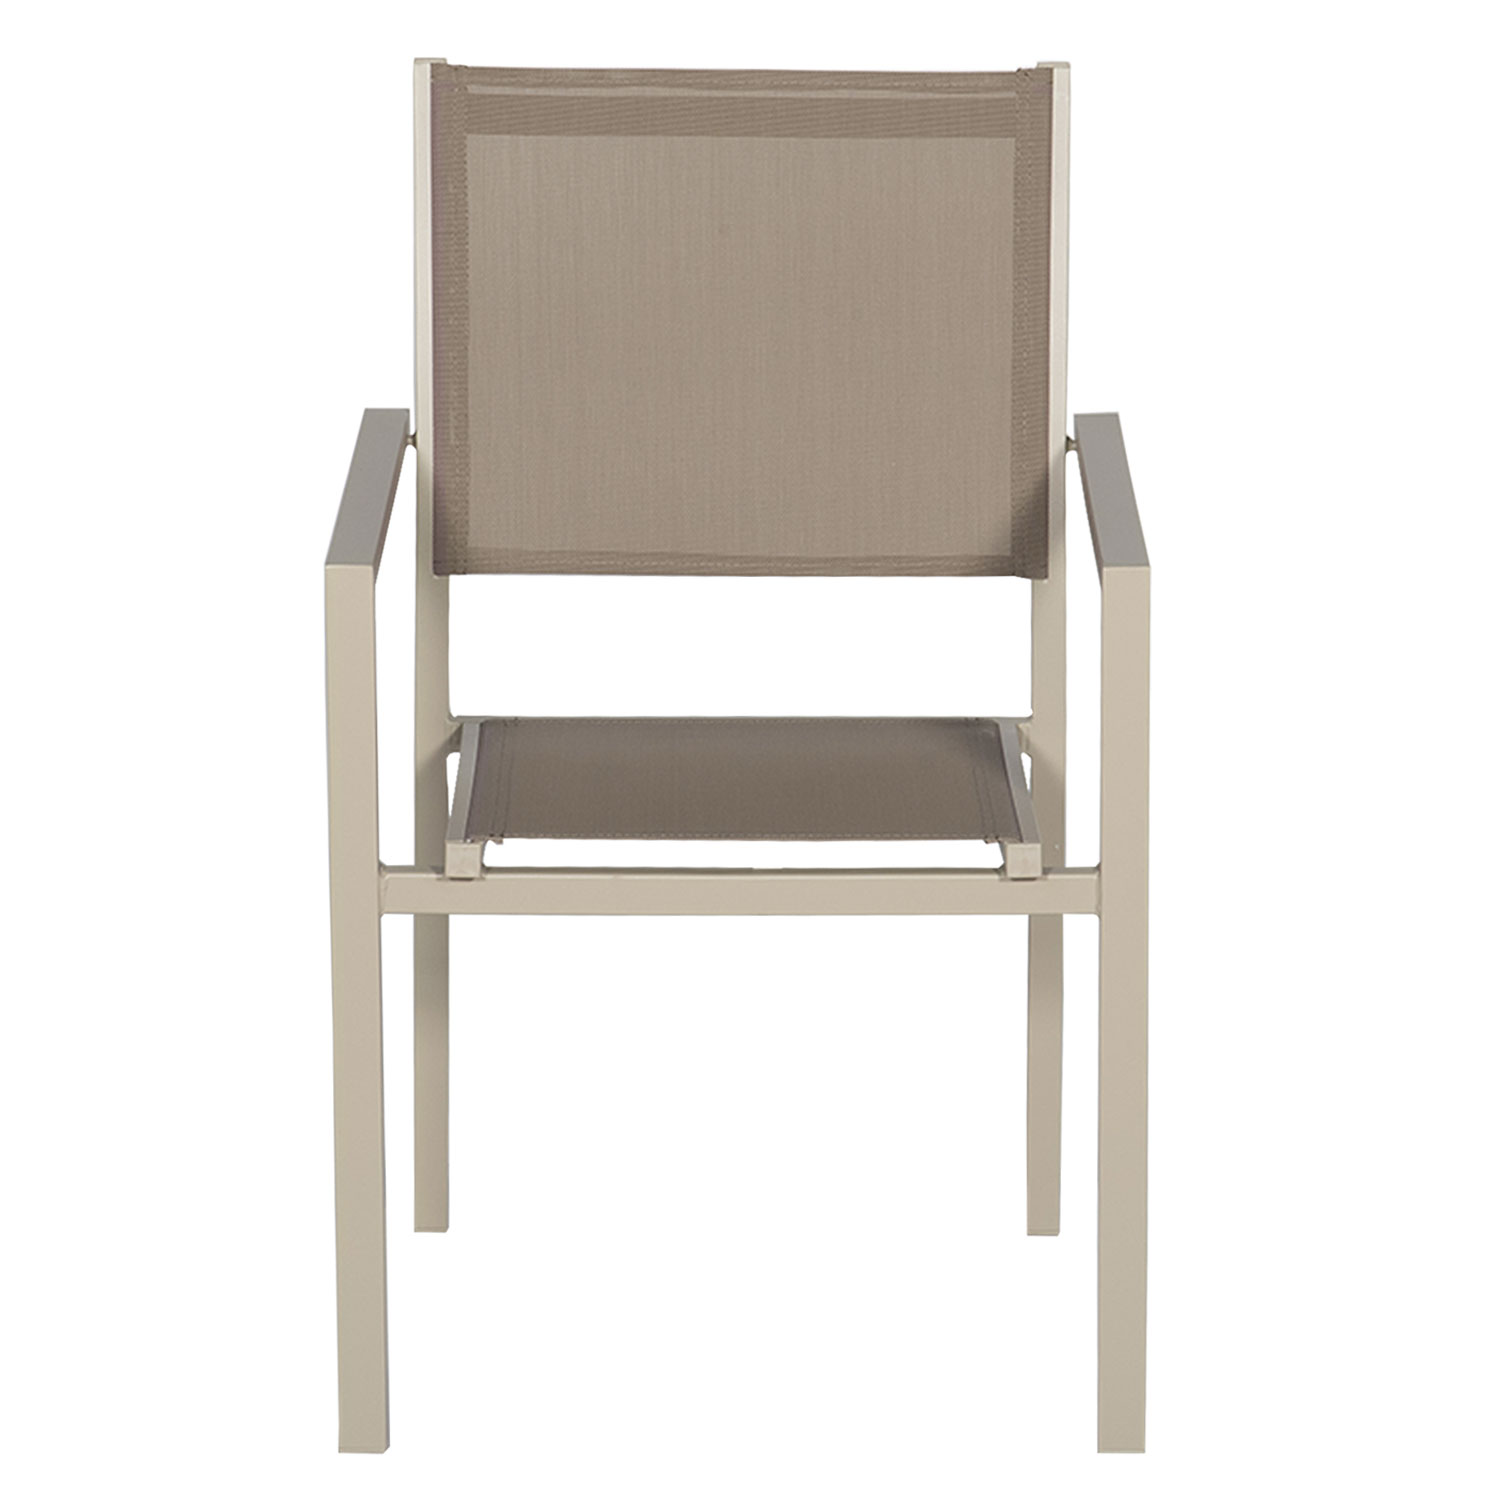 Juego de 6 sillas de aluminio color topo - Textileno topo